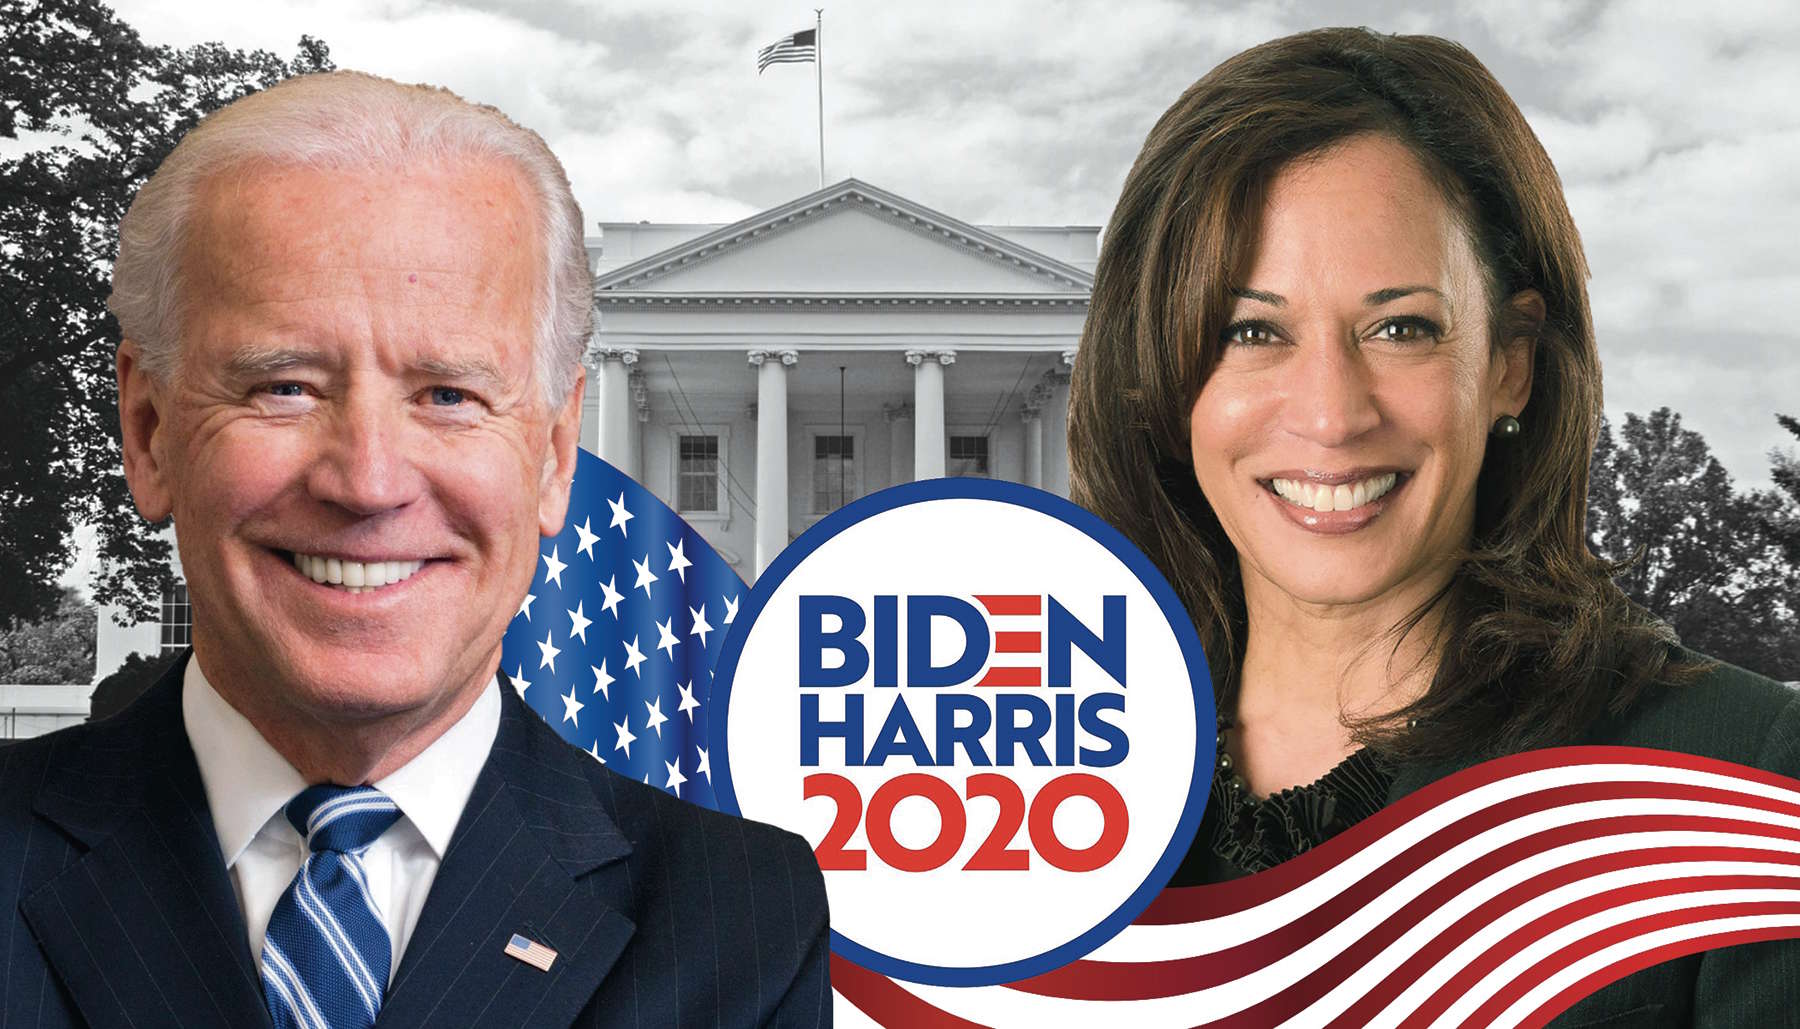 Biden-Harris Ticket 2020 www.freenation.us